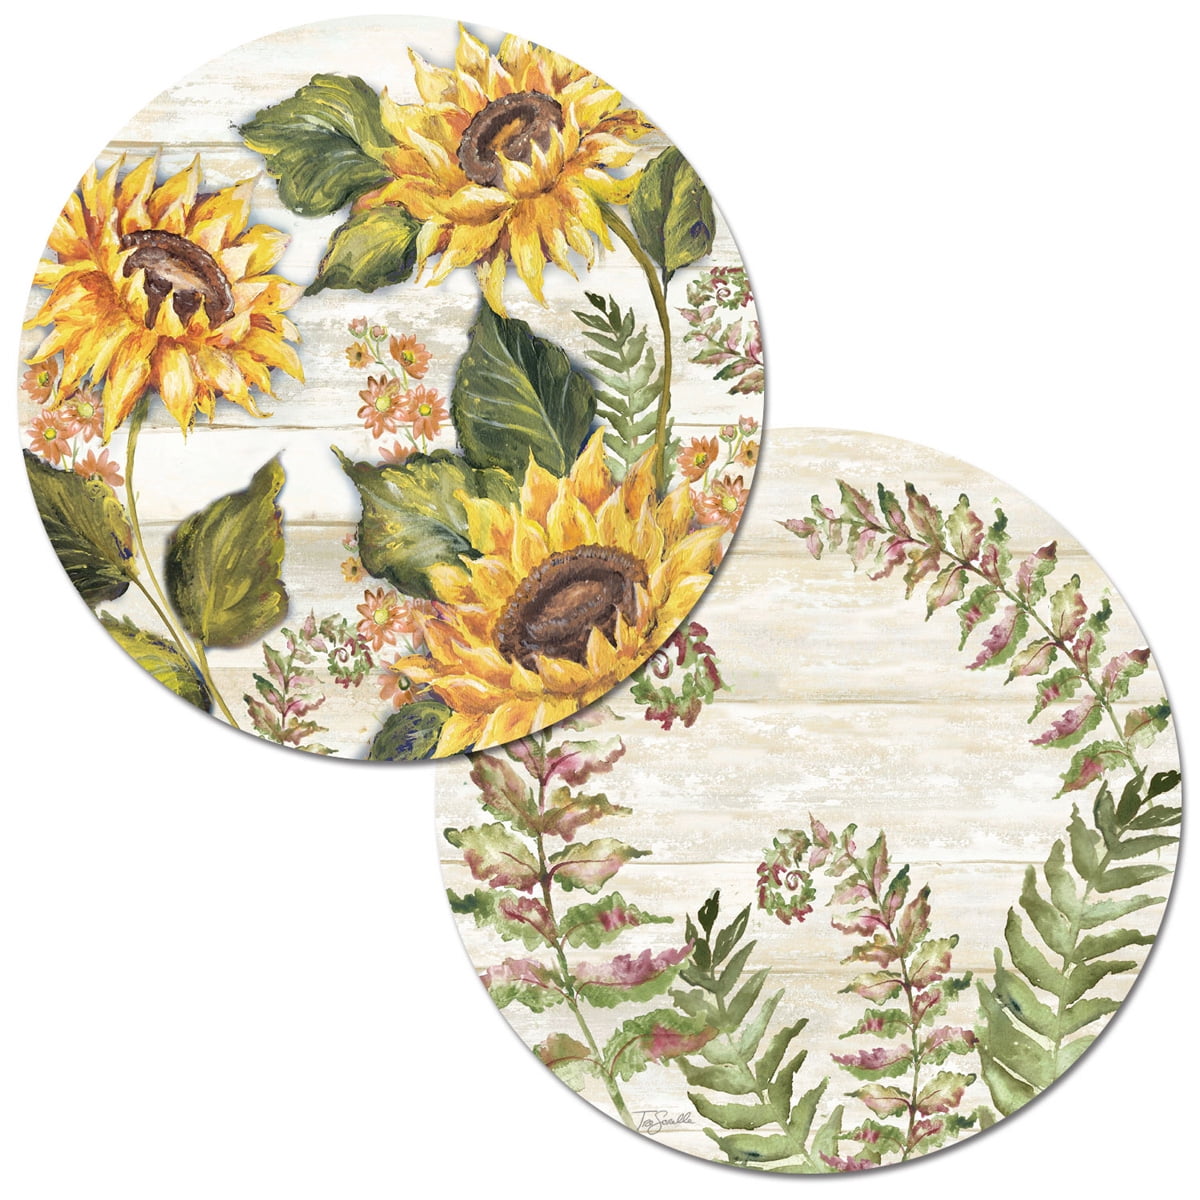 Corelle Sunflowers Reversible Plastic Placemat - Multicolor, 17